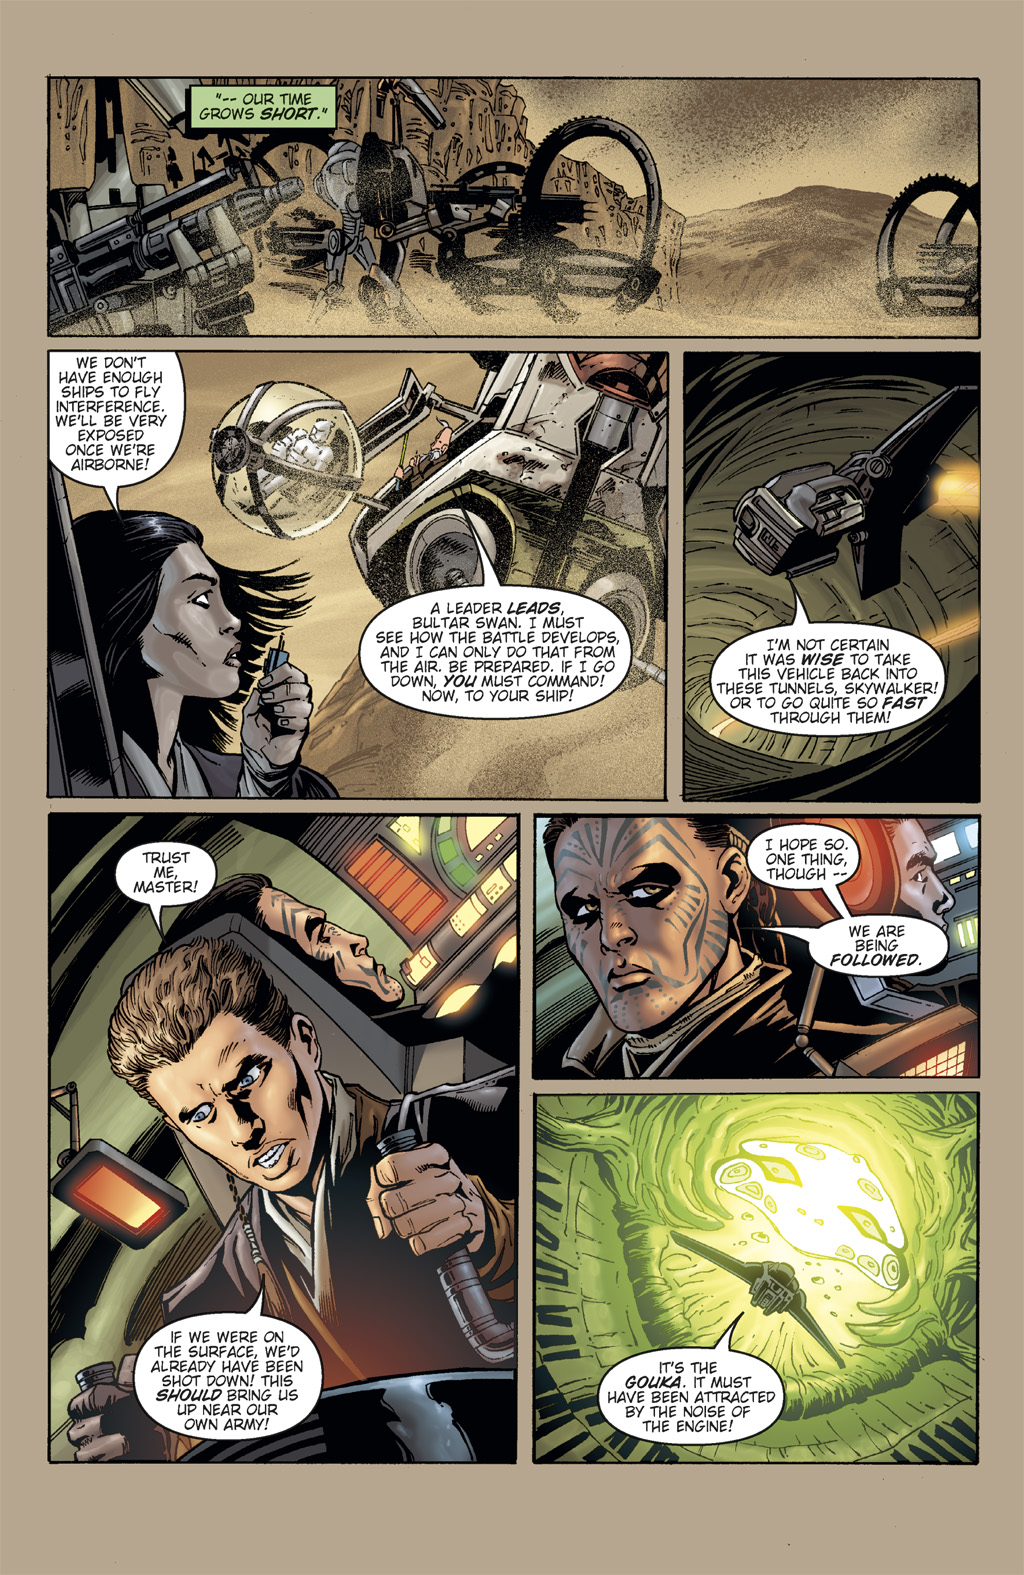 Read online Star Wars: Clone Wars comic -  Issue # TPB 3 - 111